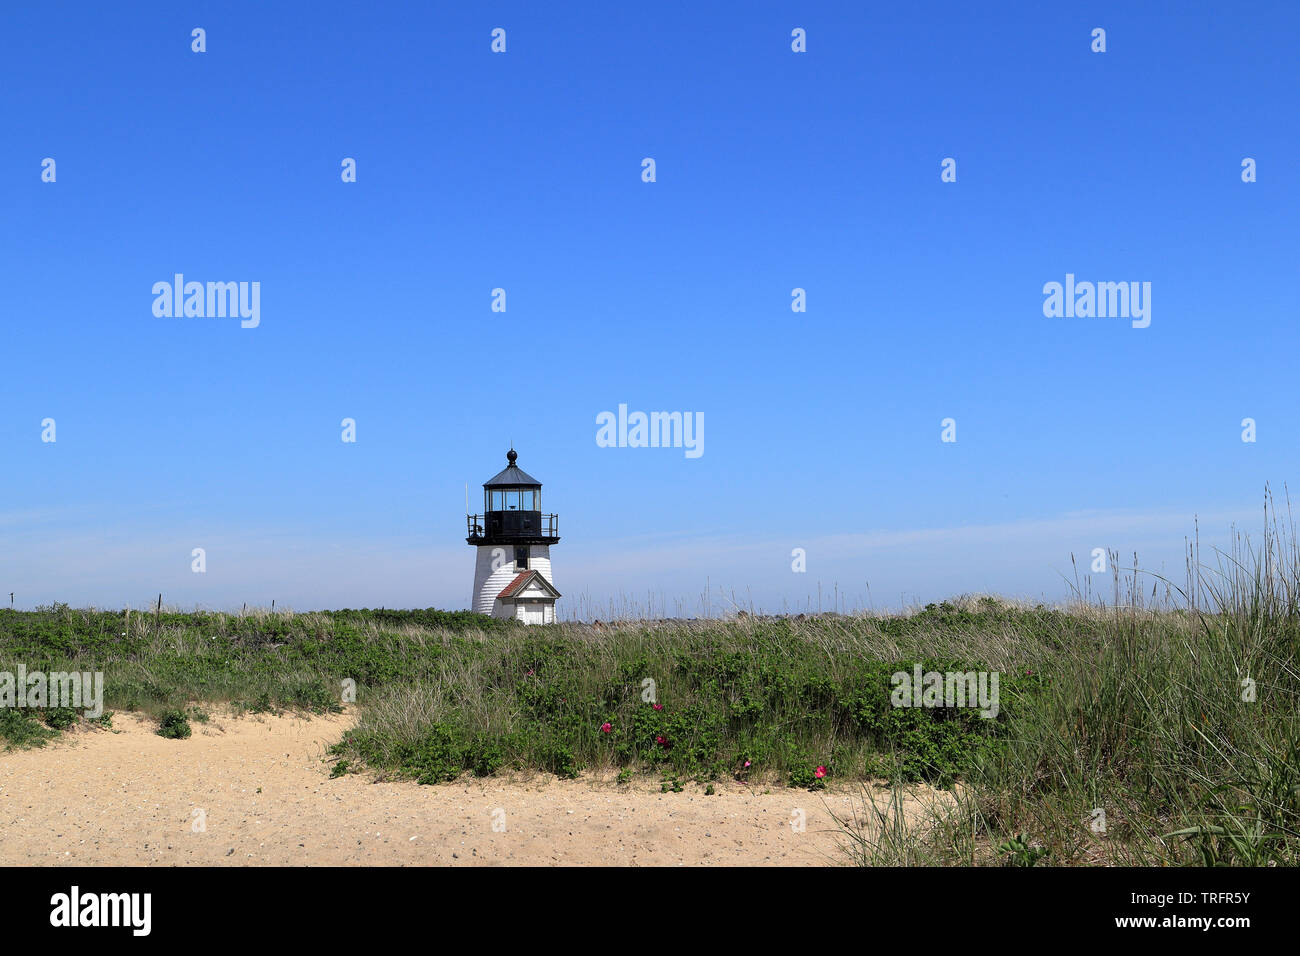 Brant Point lighthouse on Nantucket Island, Massachusetts Stock Photo